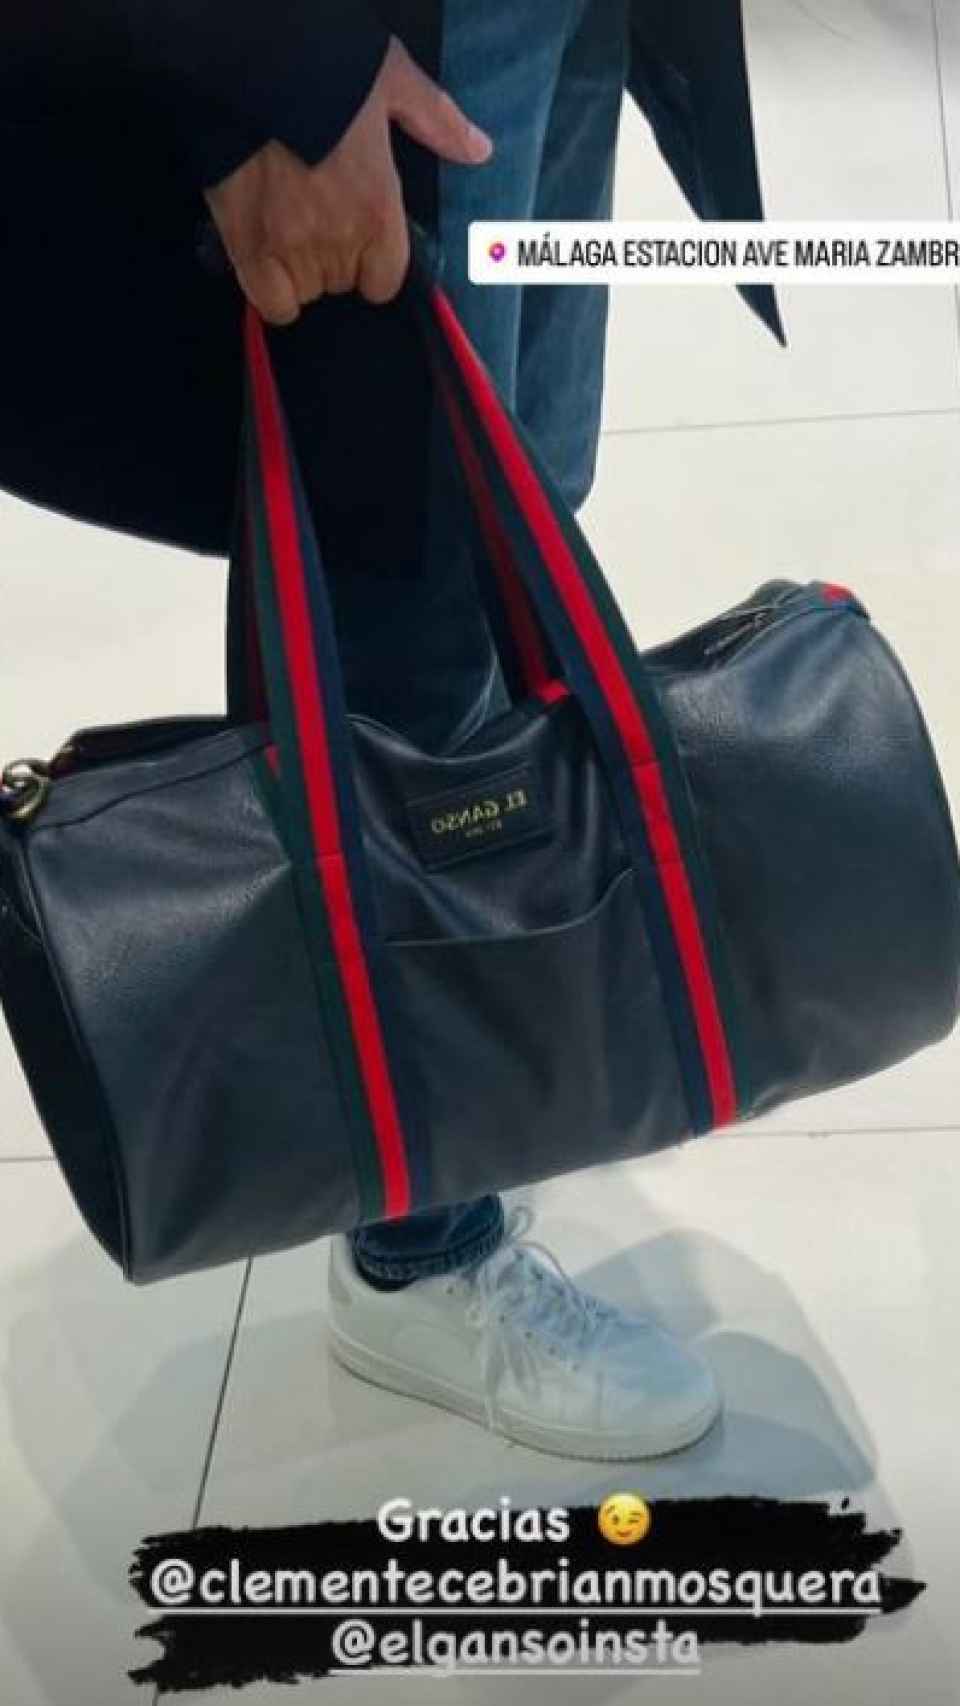 La bolsa que ha lucido Albert Rivera en su última publicación de Instagram.